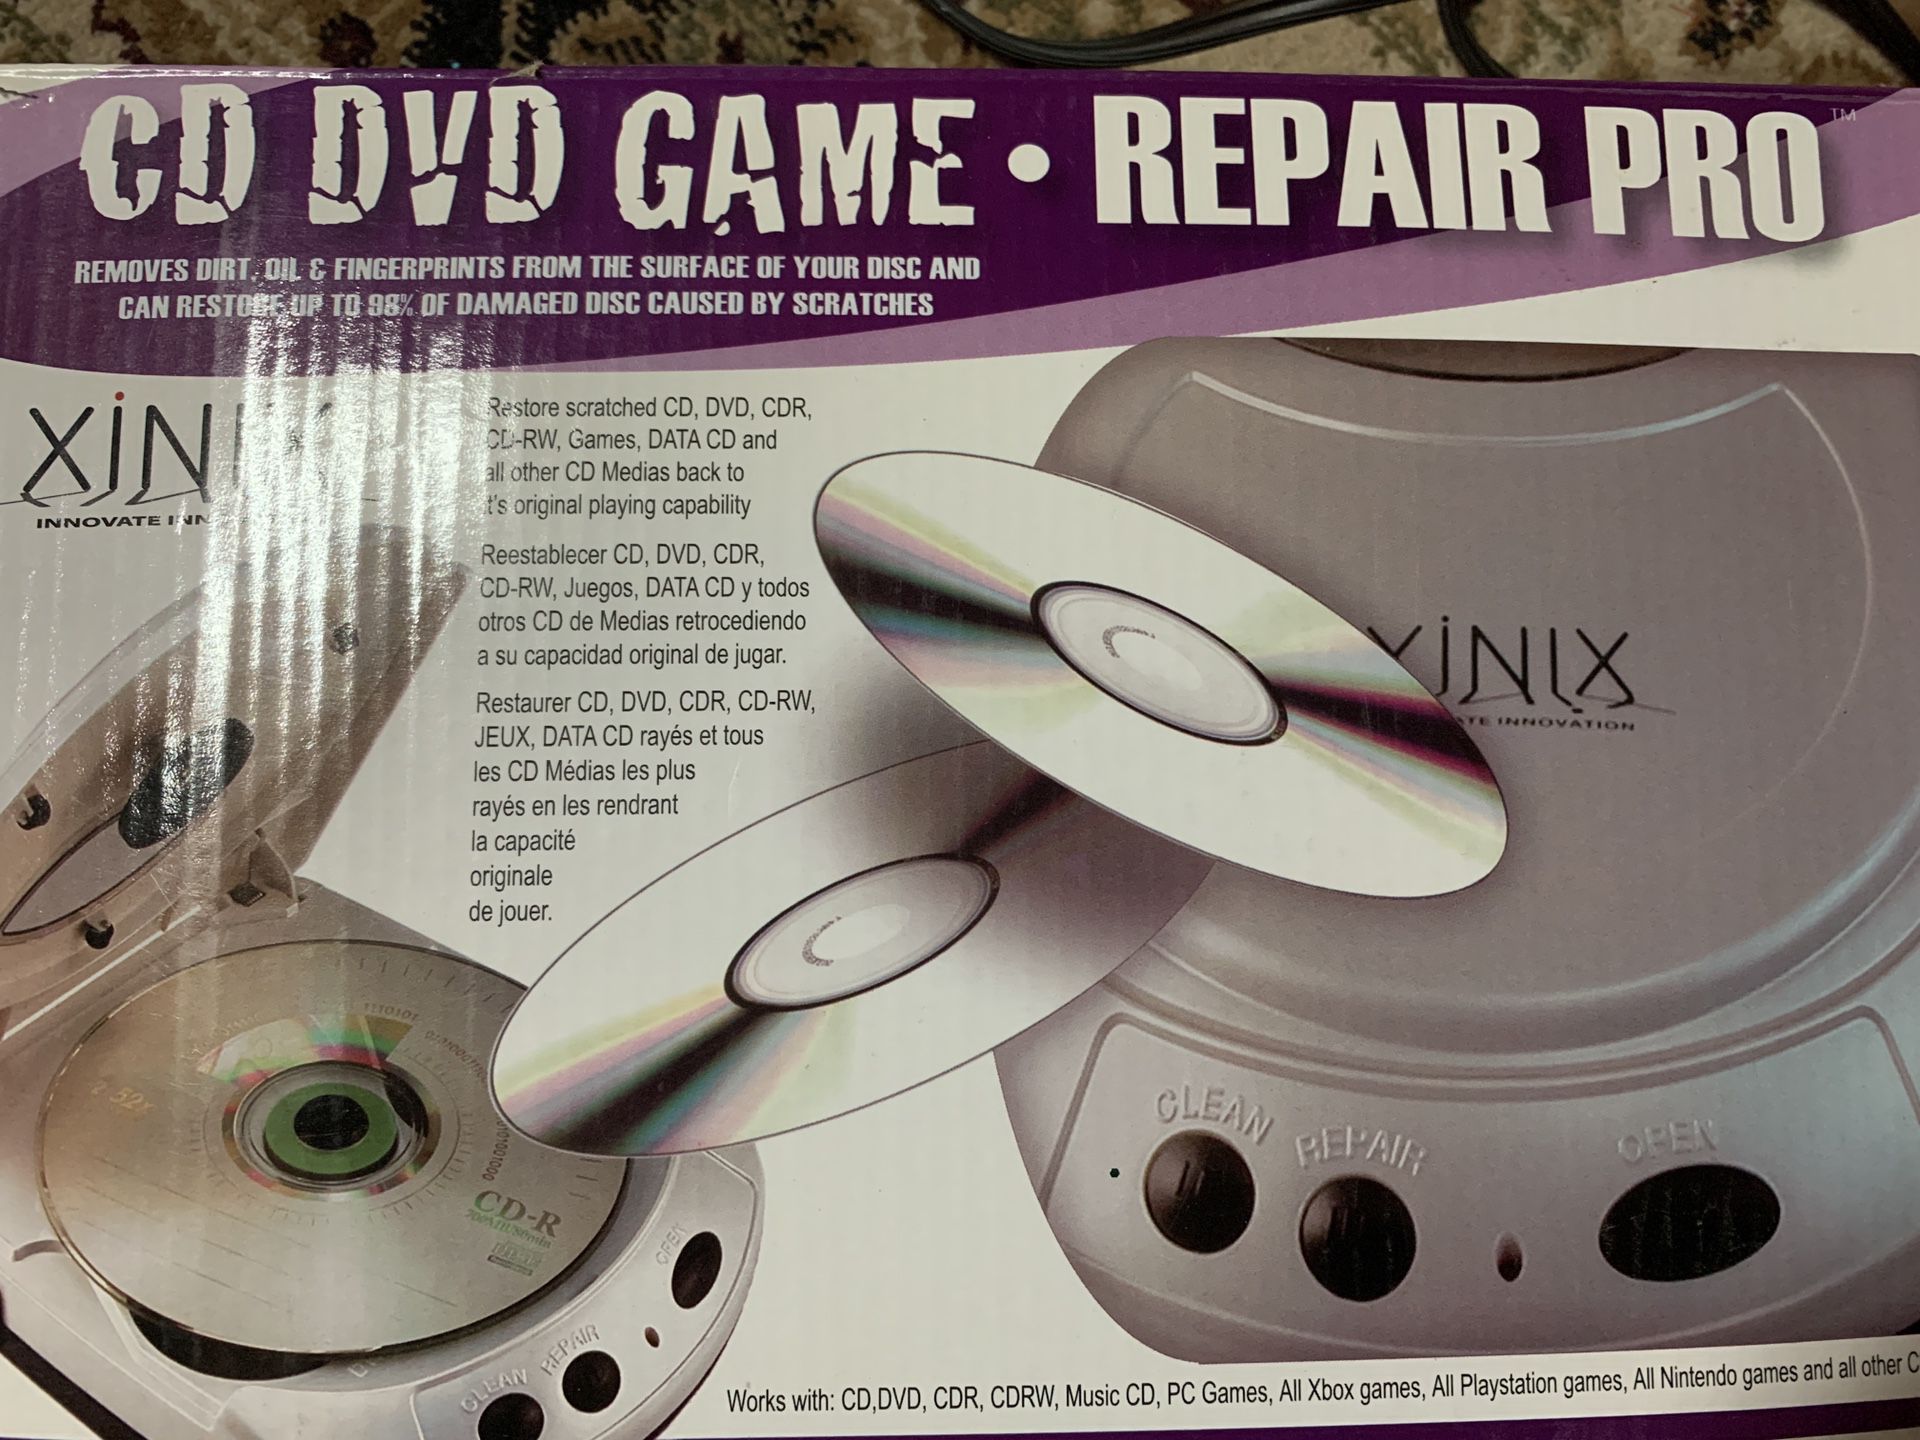 CD DVD Game Repair Pro